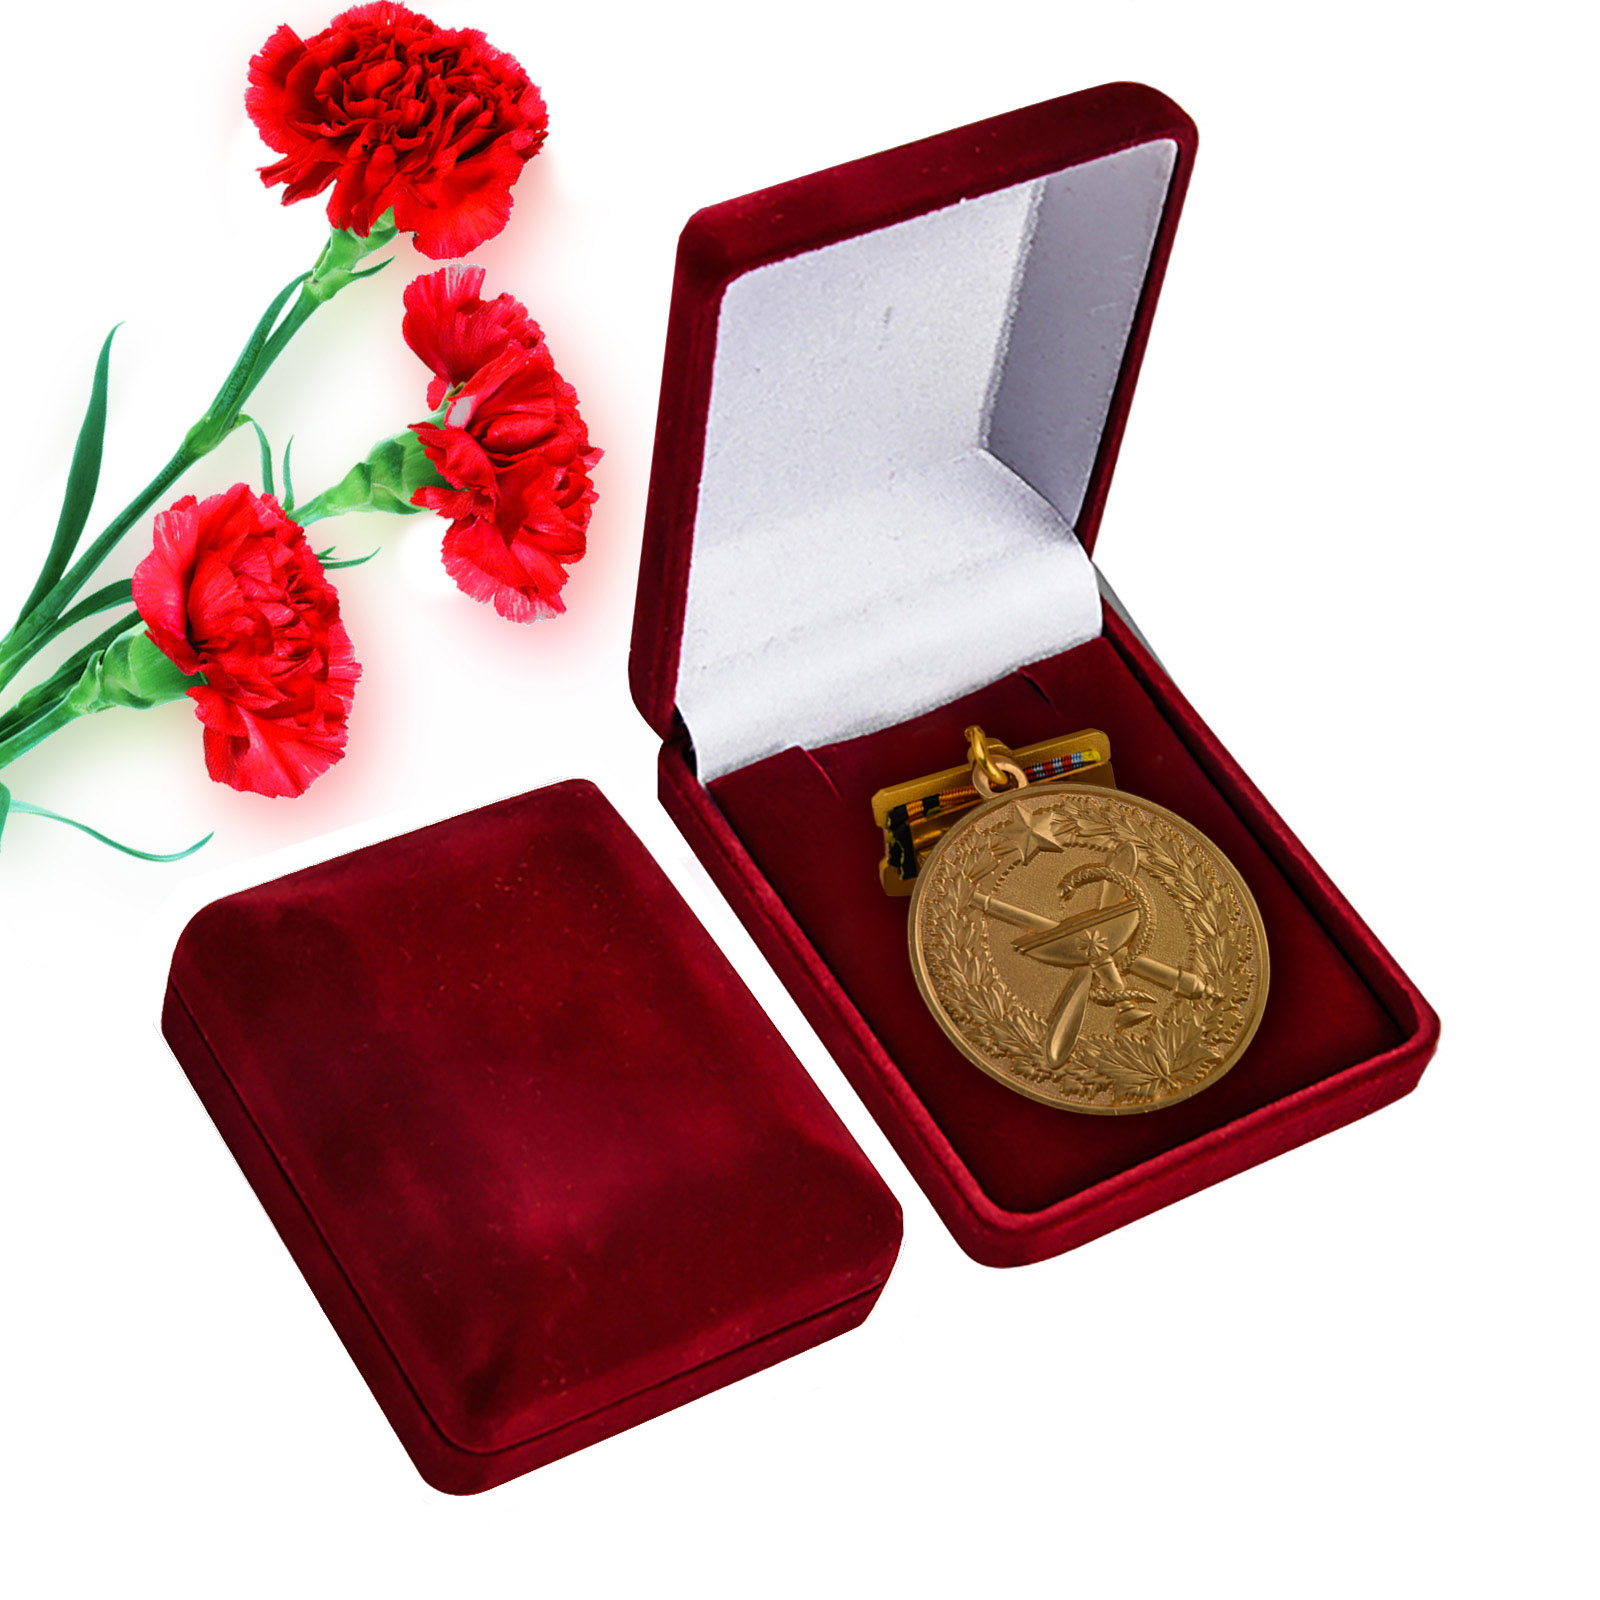 Купить юбилейную медаль 100 лет медицинской службы ВКС оптом или в розницу